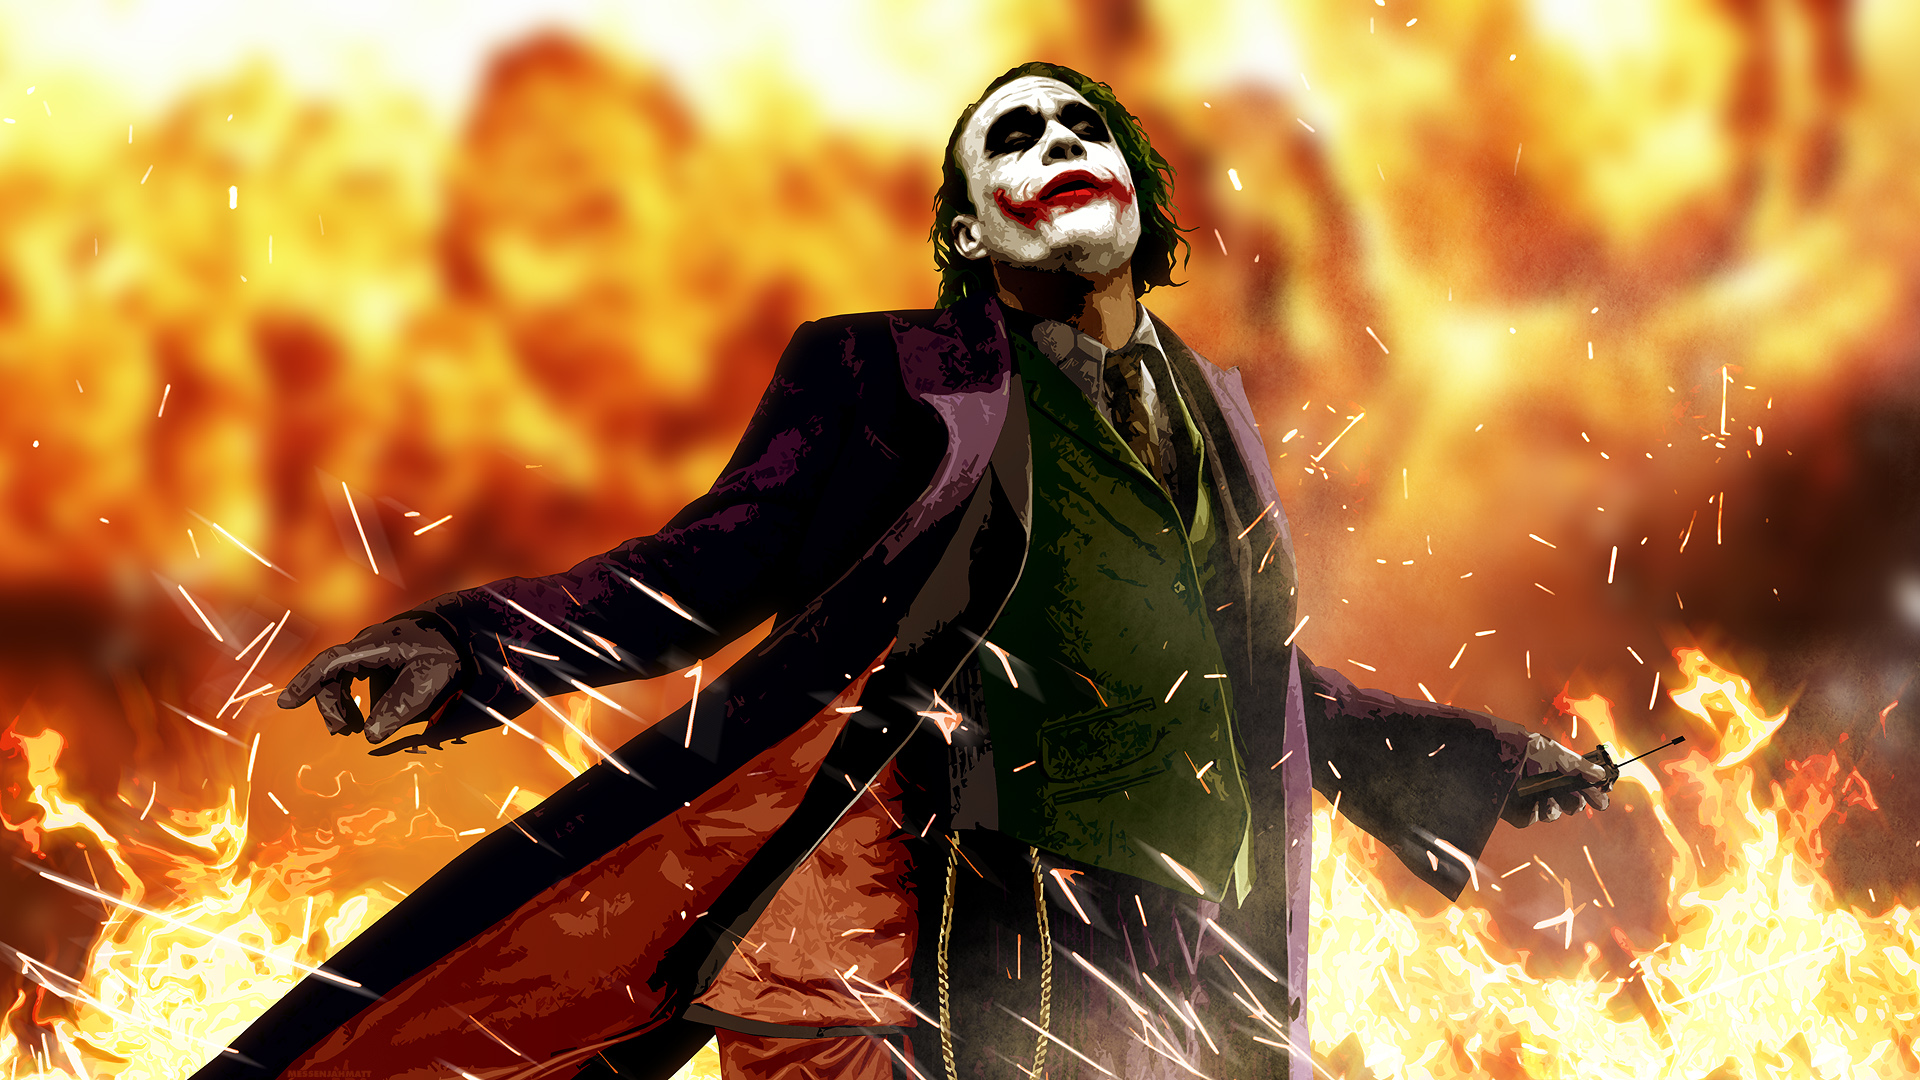 joker - The Joker Wallpaper (28092860) - Fanpop